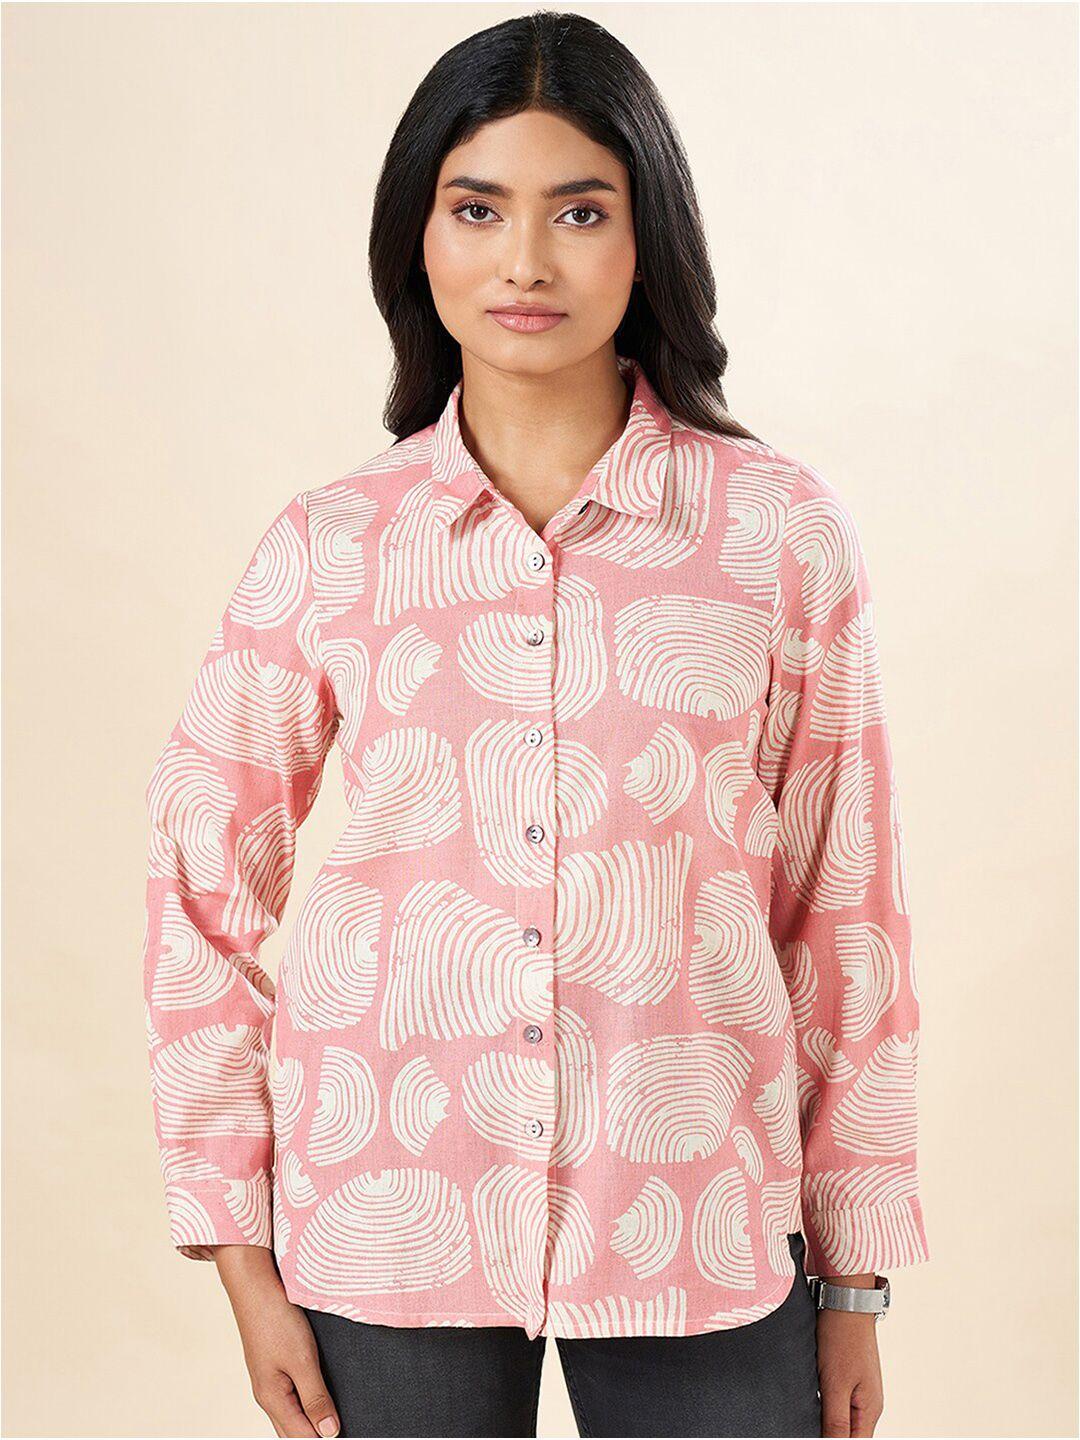 akkriti by pantaloons printed cotton casual shirt